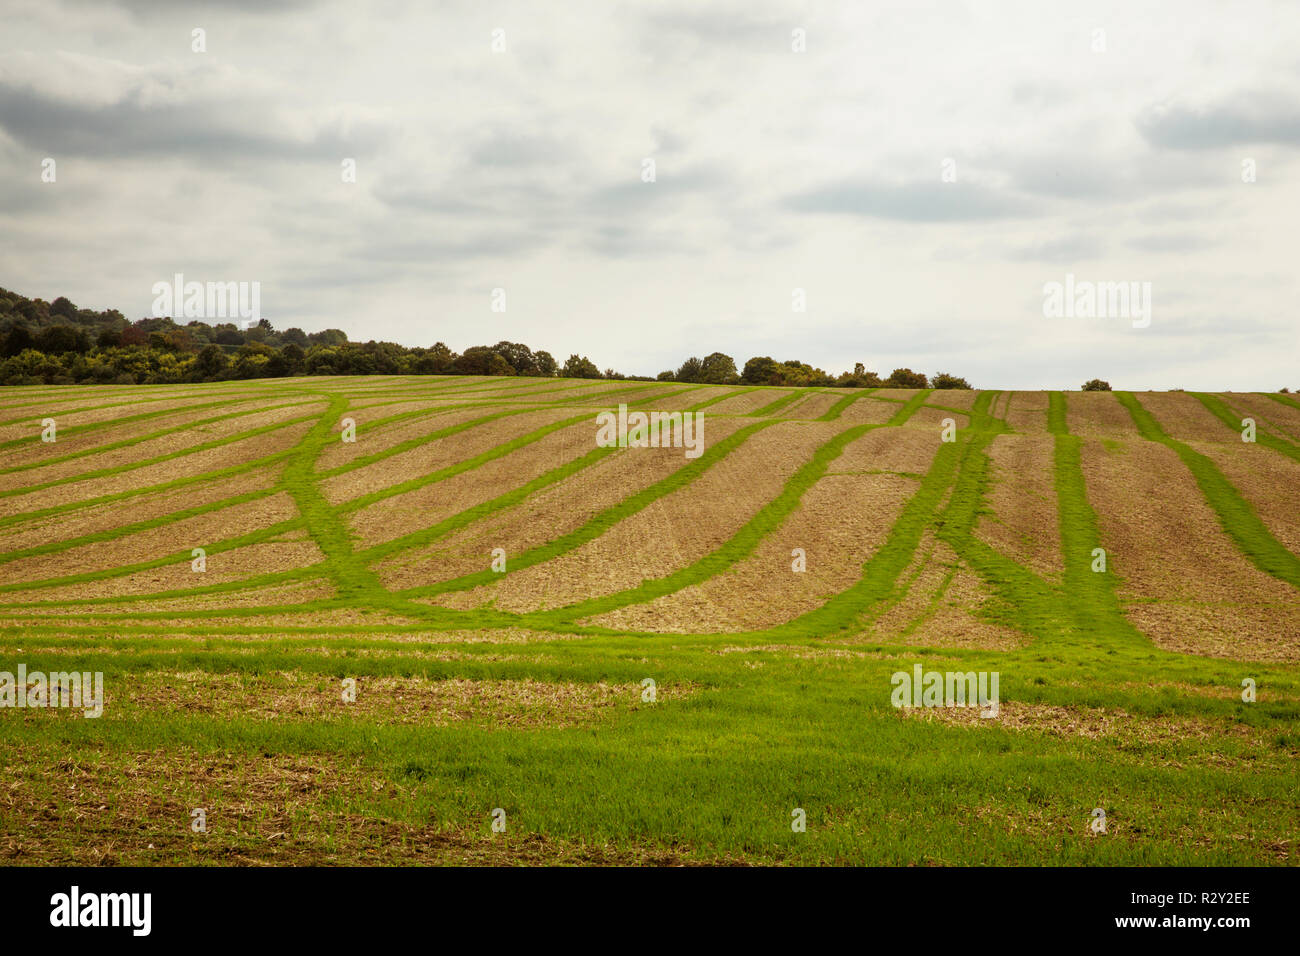 Paisaje de tierras de cultivo en agosto, un paisaje ondulado con verde y marrón, verdes campos de cultivo en franjas a través de los campos arados después de la cosecha. Foto de stock